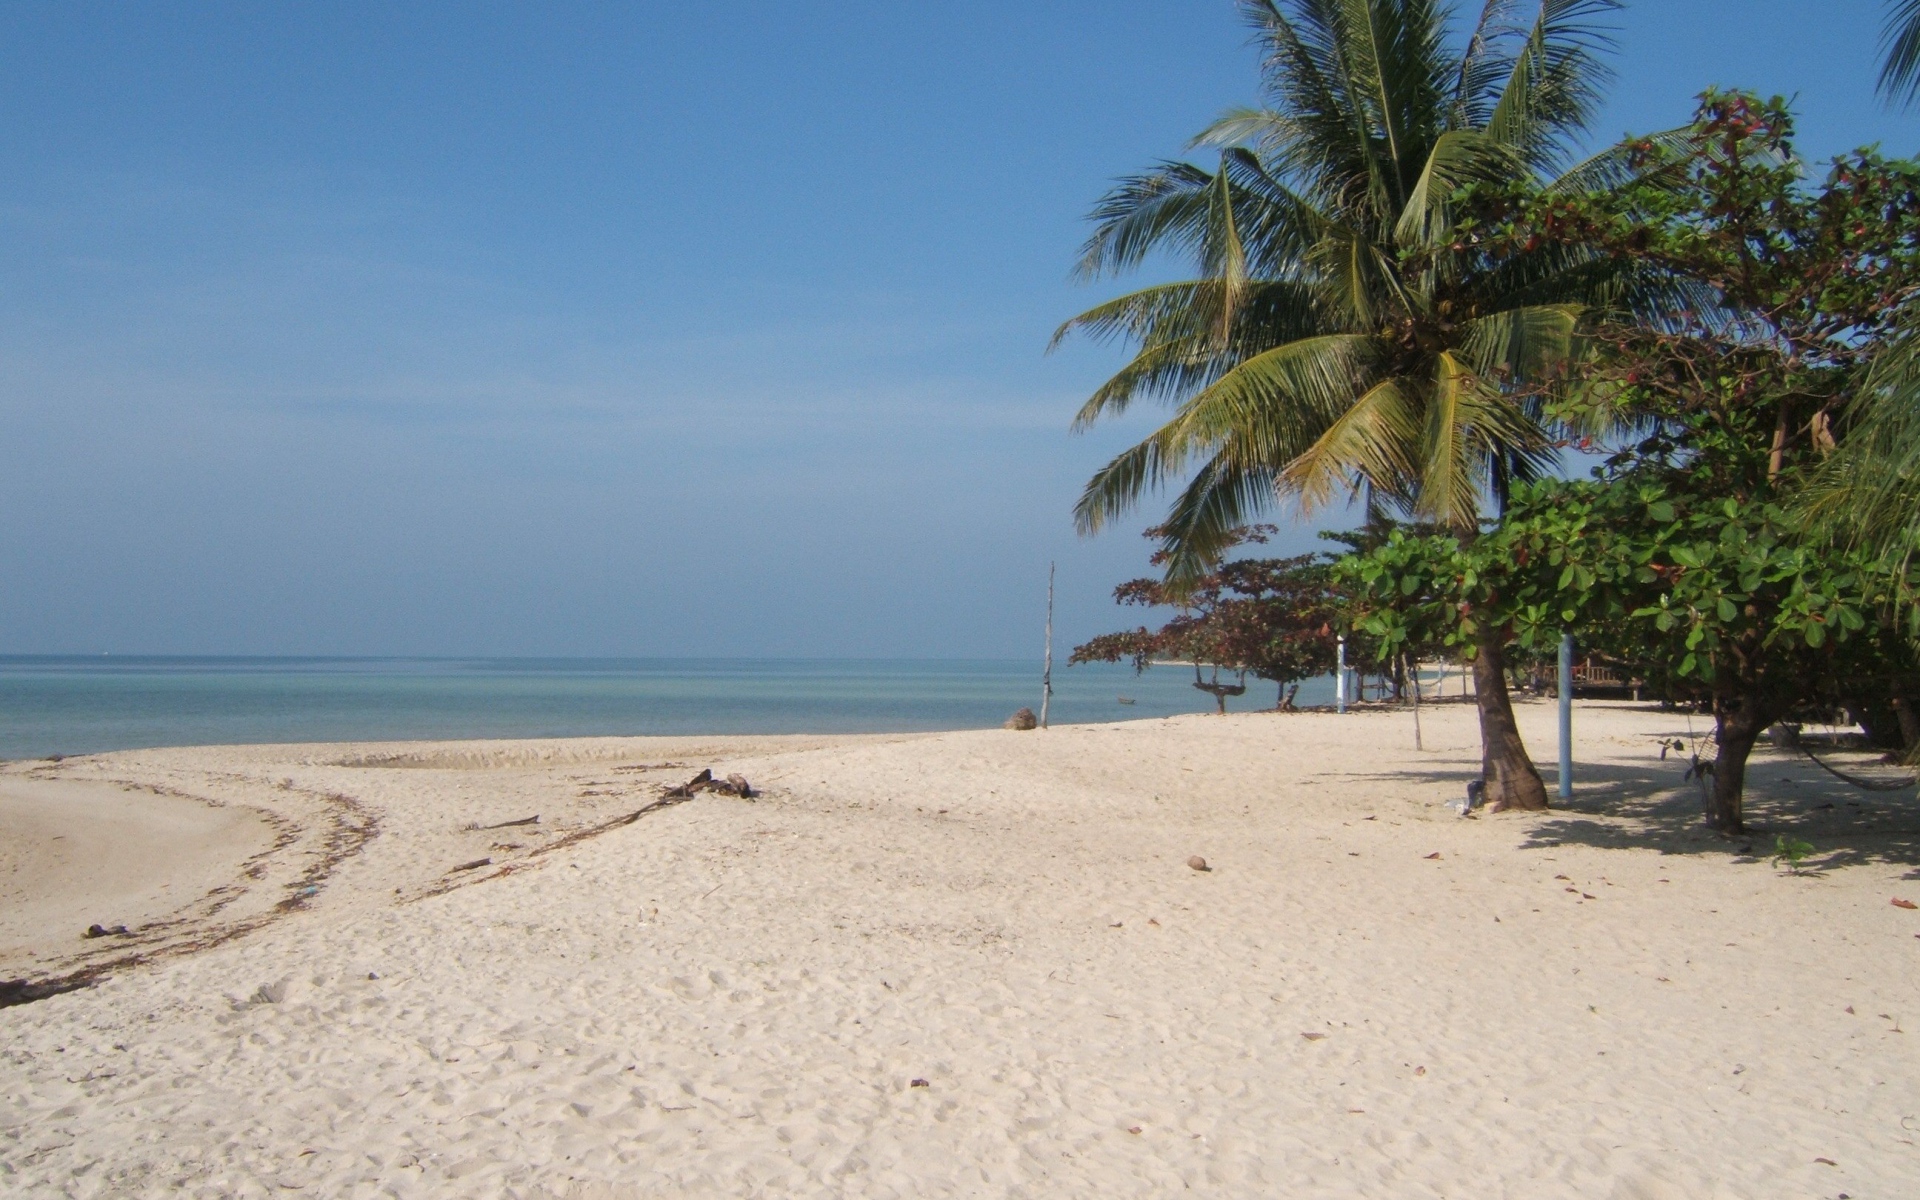 Песчаный пляж на острове Панган, Таиланд